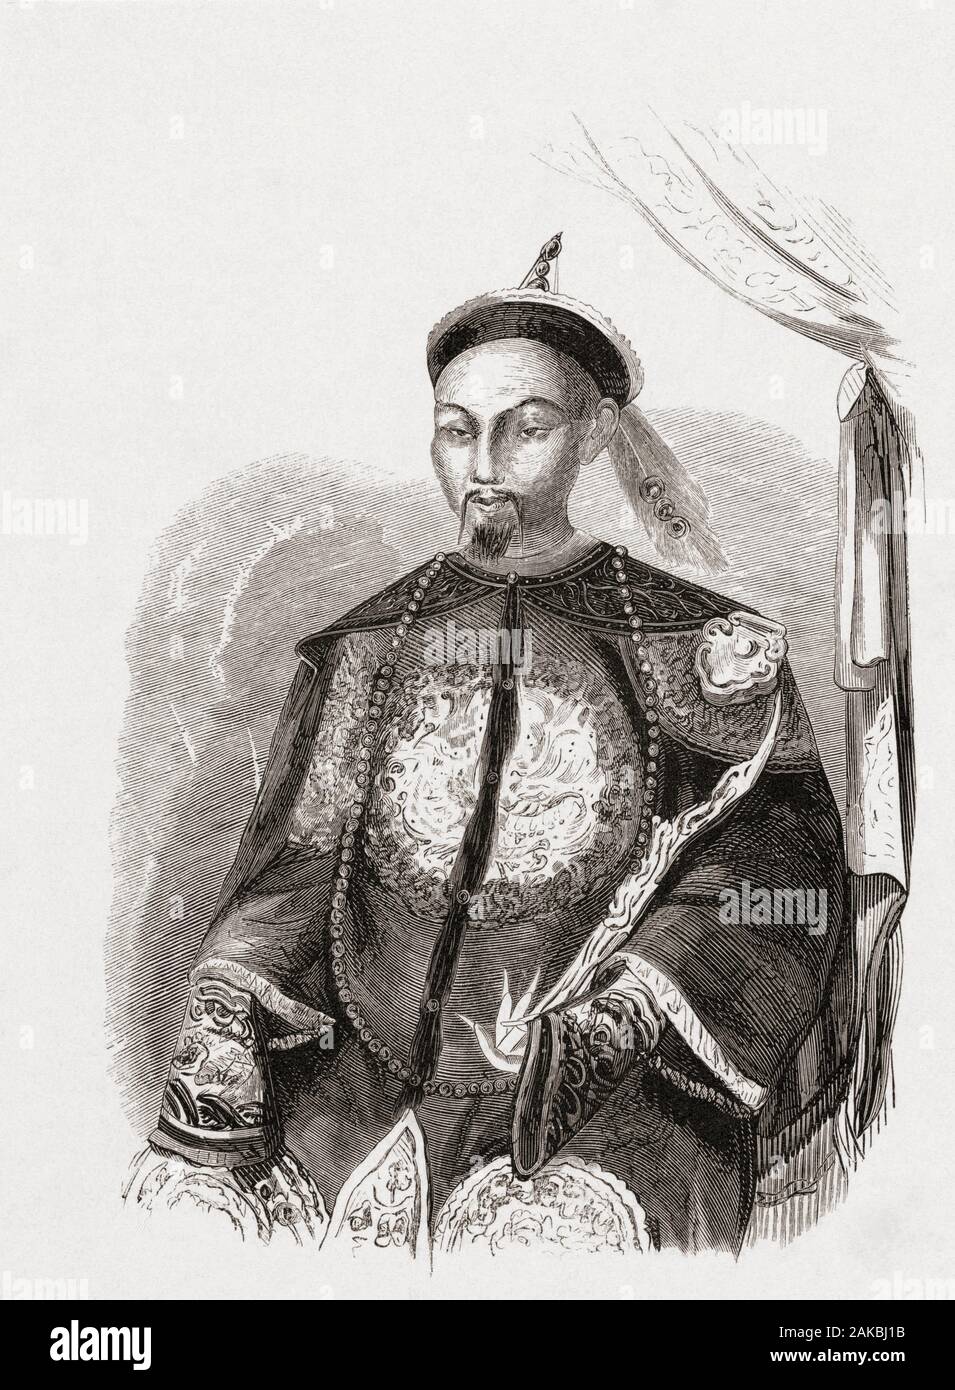 L'Empereur Daoguang, 1782 - 1850. Huitième Empereur de la dynastie Qing. Naissance Aisin Gioro Mianning. Après une 19e siècle imprimer. Banque D'Images